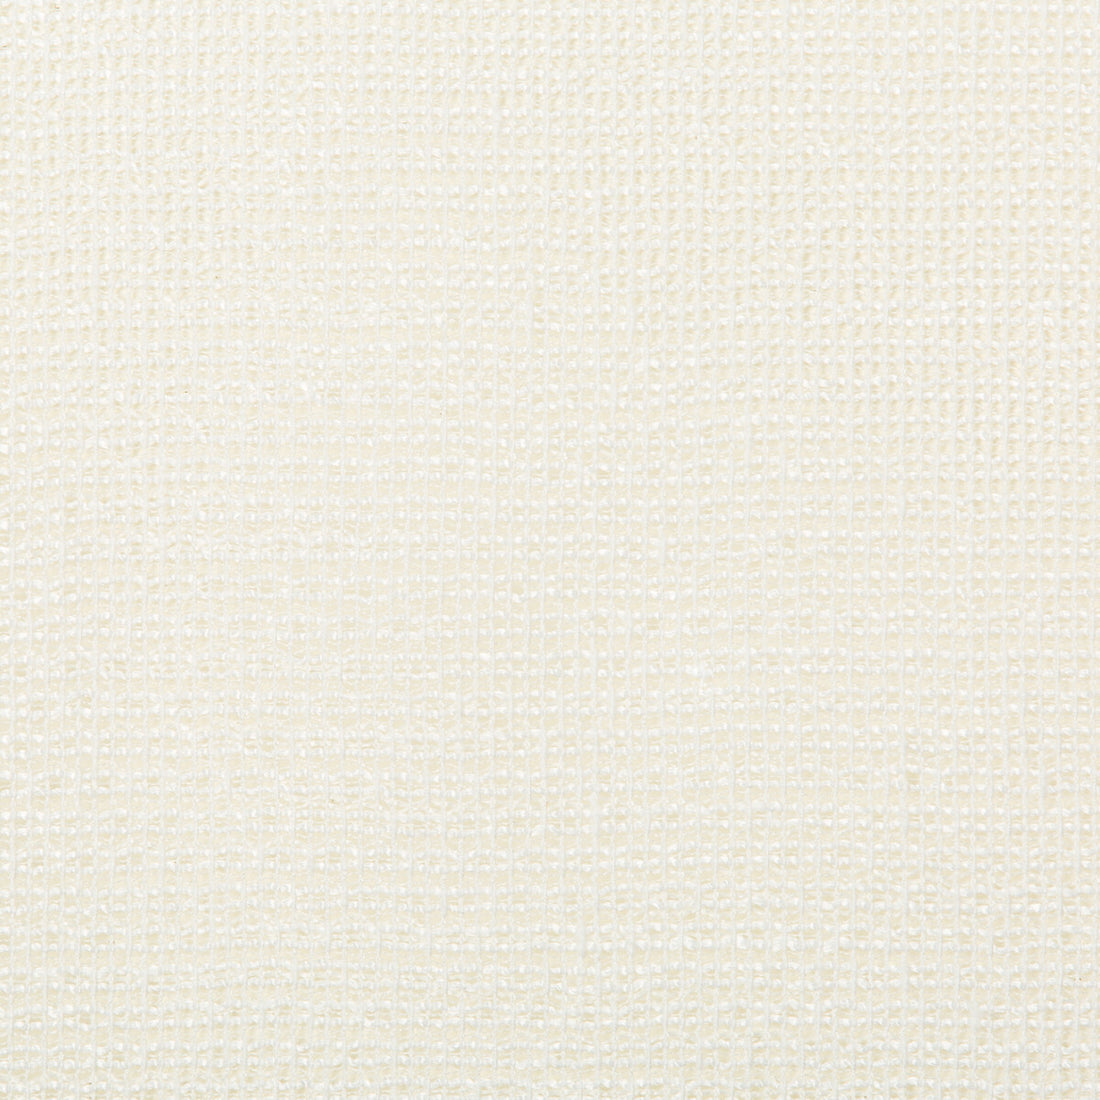 Kravet Basics fabric in 4676-1 color - pattern 4676.1.0 - by Kravet Basics